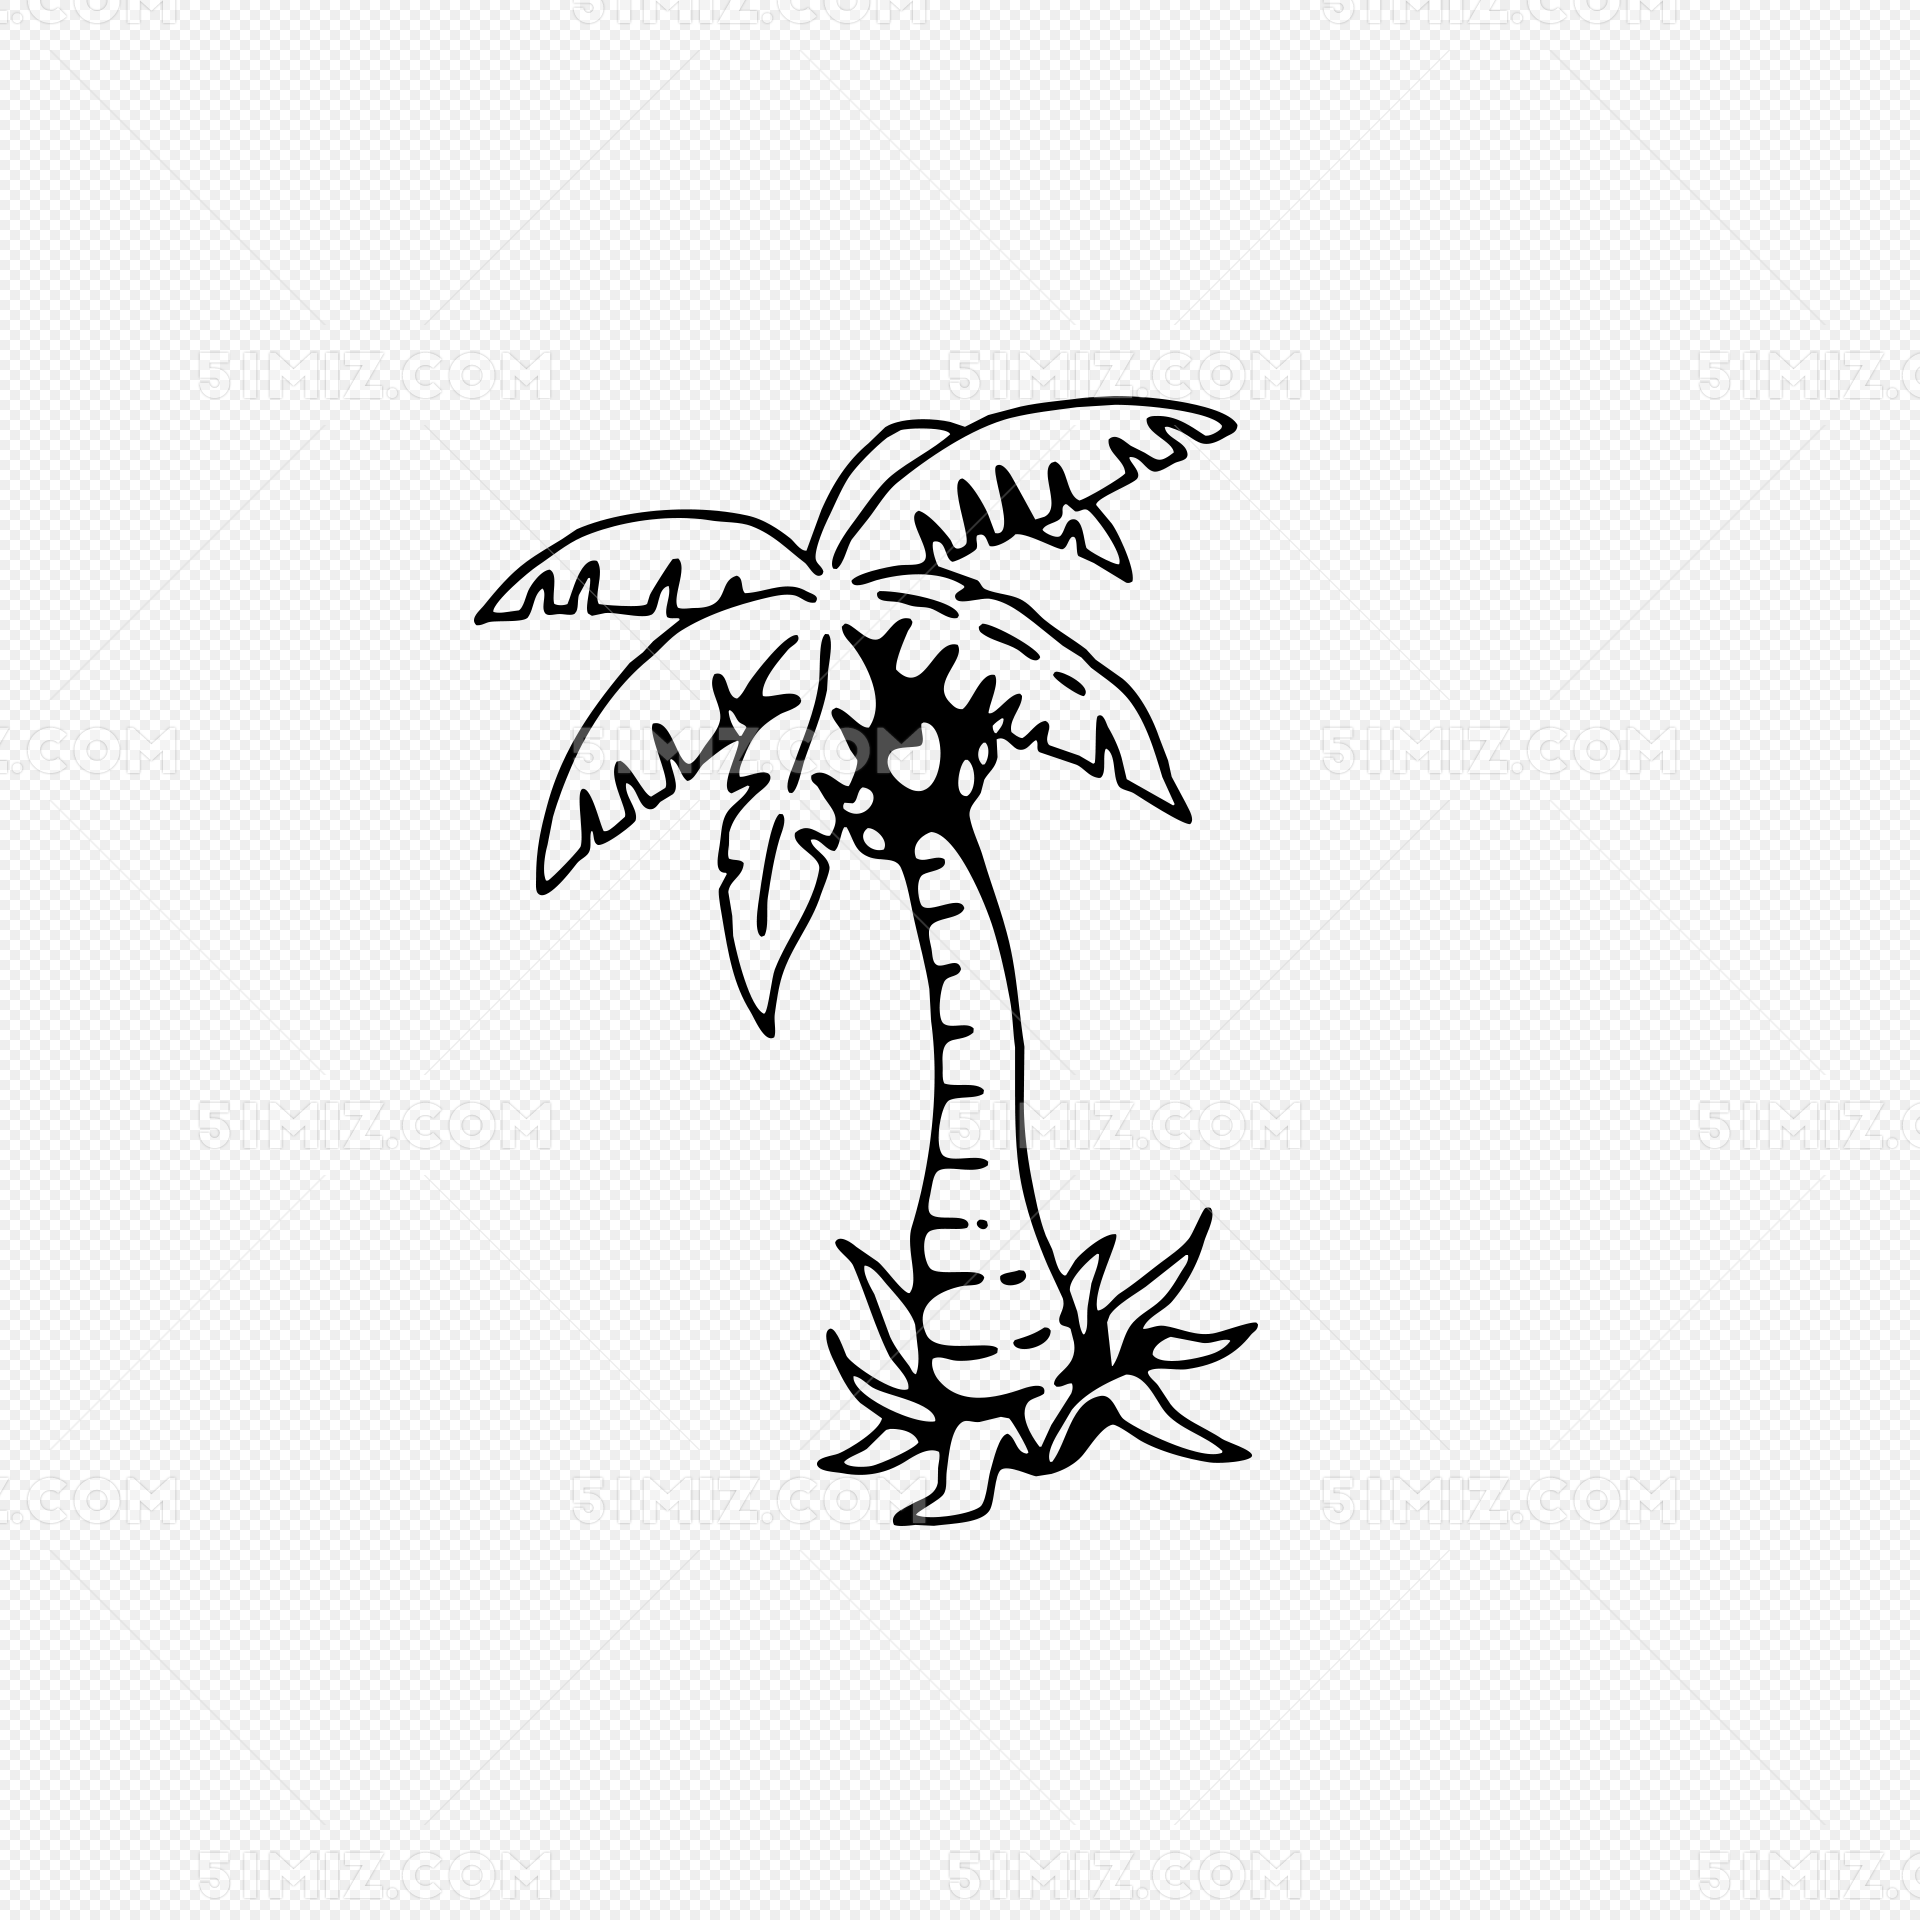 椰子树纹身图案-图库-五毛网